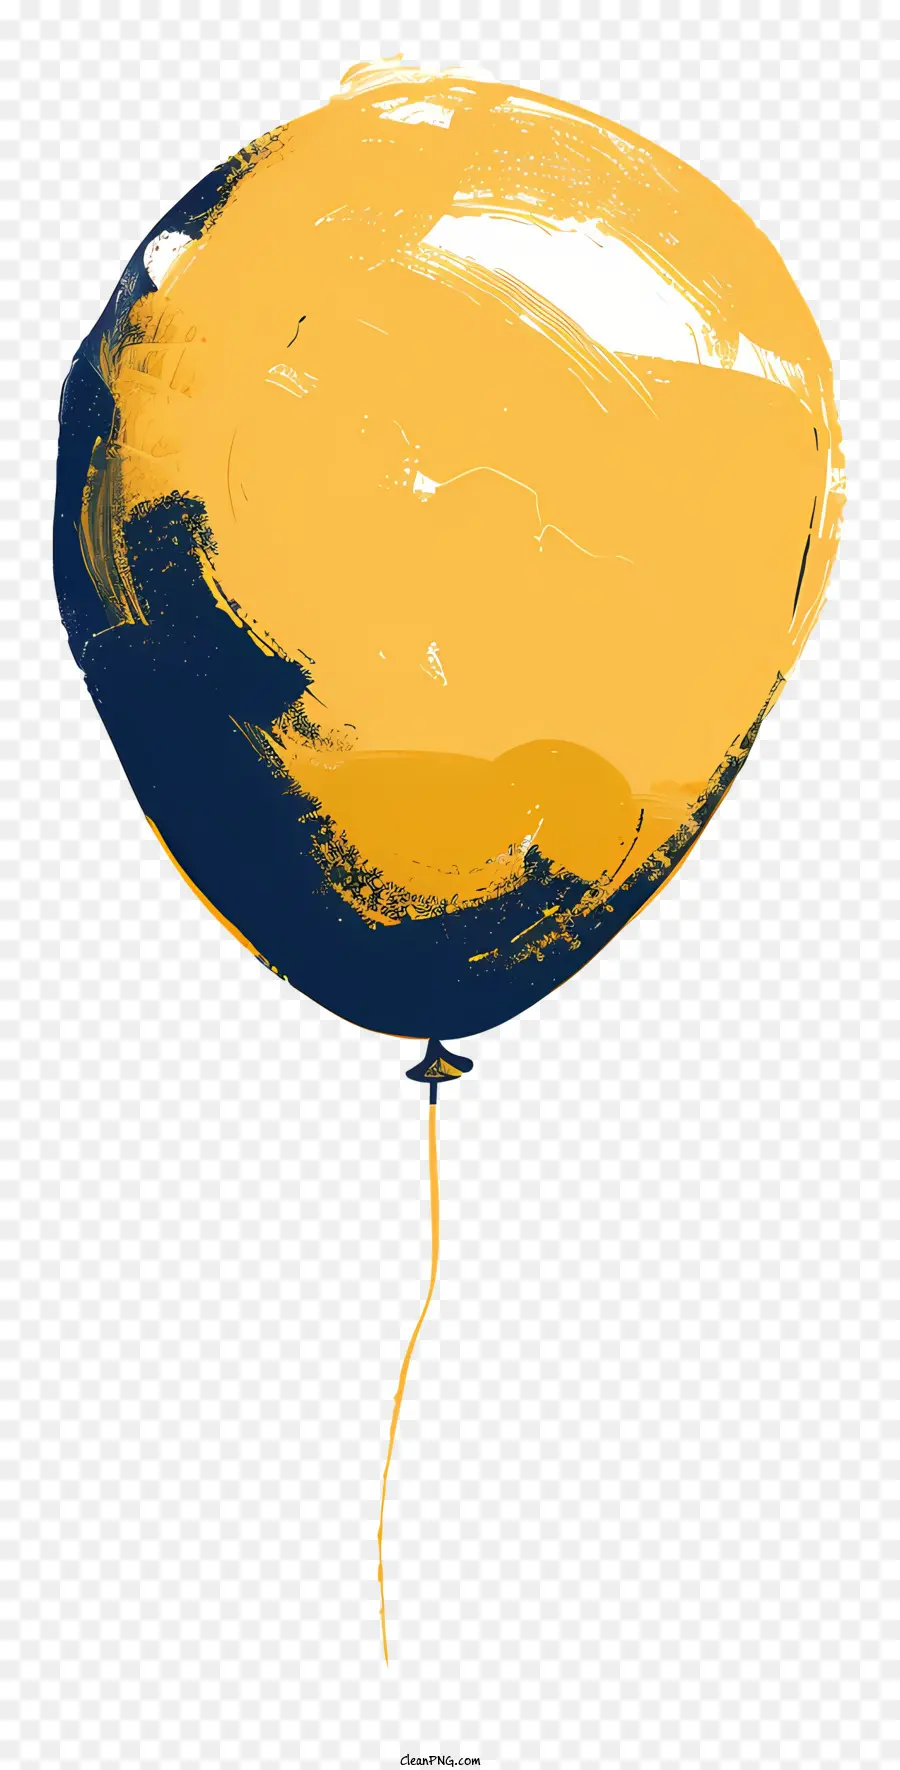 Ballon Gelbblaues Loch schwarzer Hintergrund - Gelb und blauer Ballon mit Loch